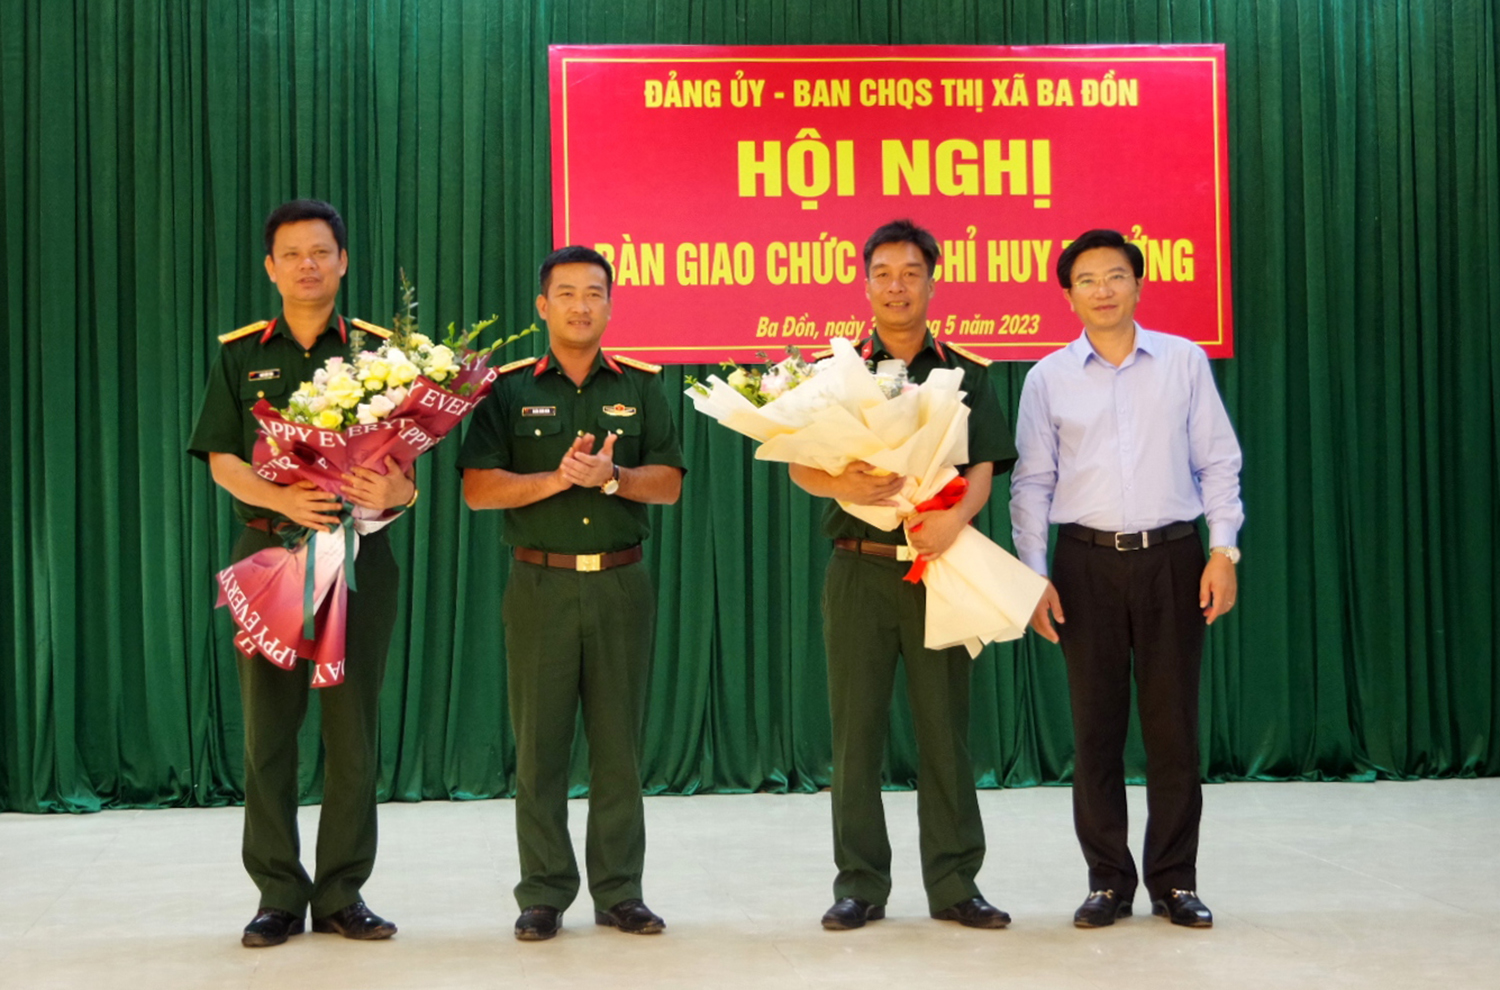 Các đồng chí Chỉ huy trưởng Bộ Chỉ huy Quân sự tỉnh Đoàn Sinh Hòa, Bí thư Thị ủy Ba Đồn Trương An Ninh tặng hoa chúc mừng các đồng chí nhận nhiệm vụ mới